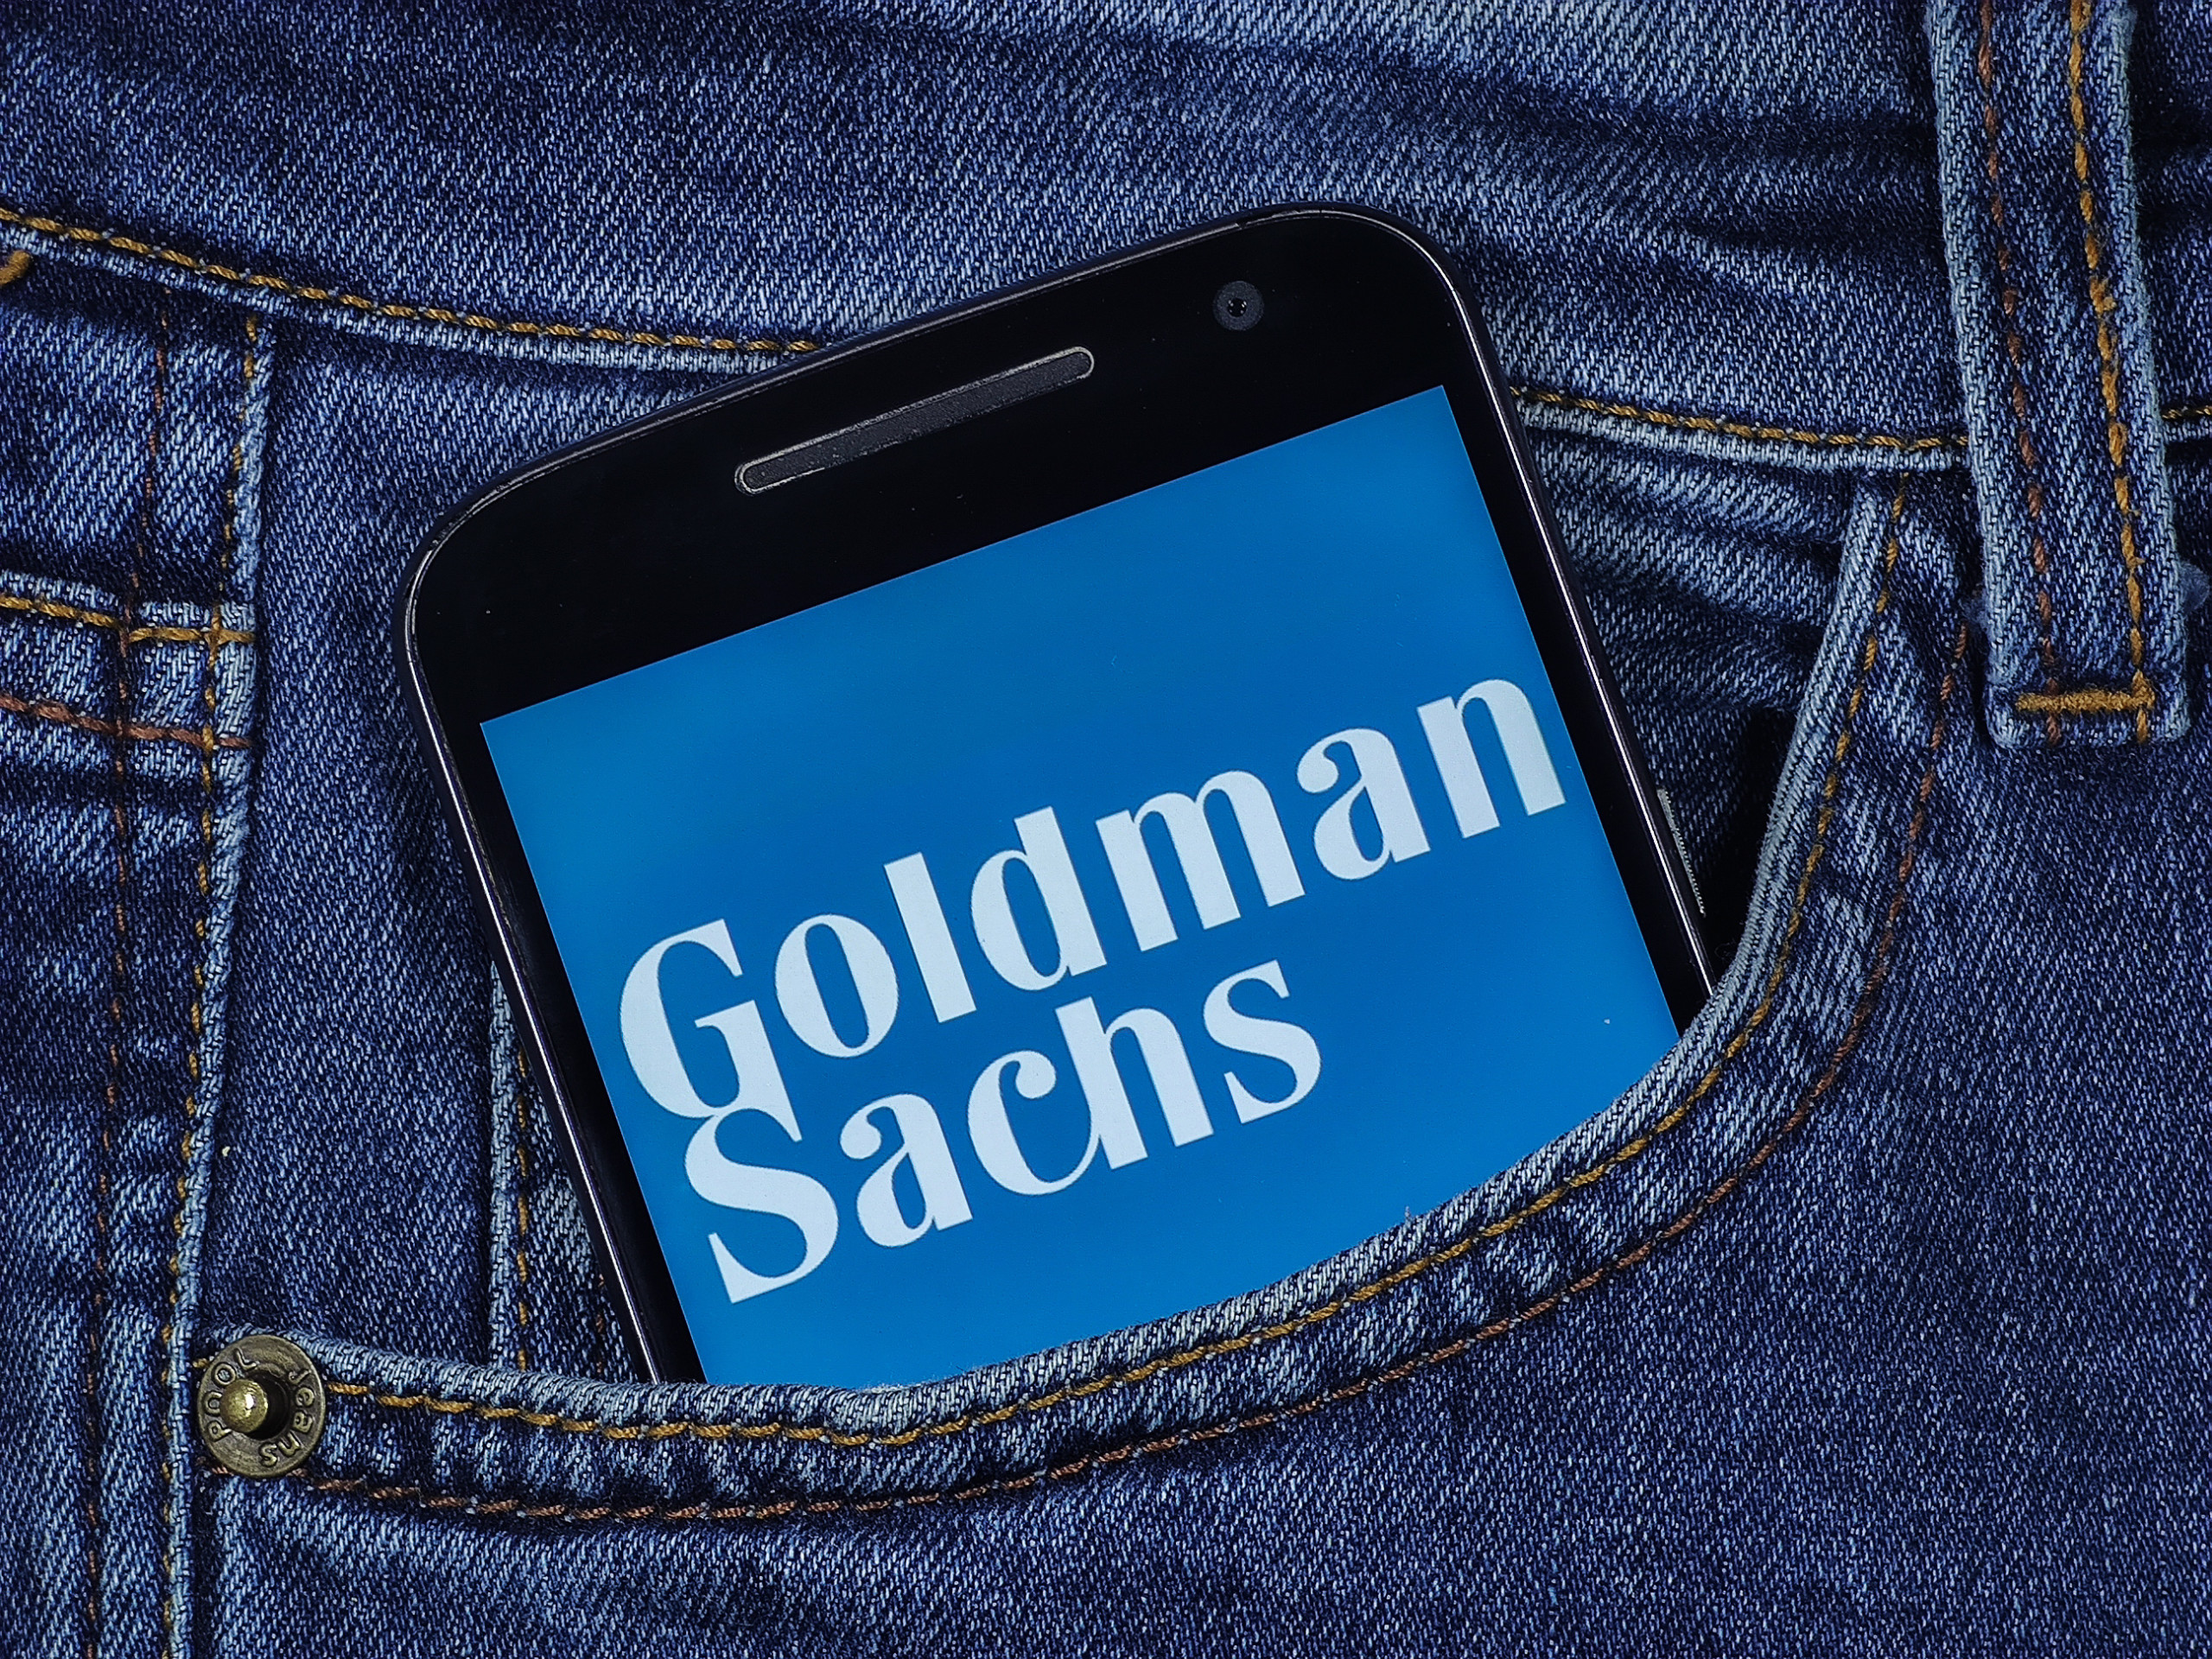 Chevron und Macy’s auf „Conviction Buy List“ von US-Bank Goldman Sachs